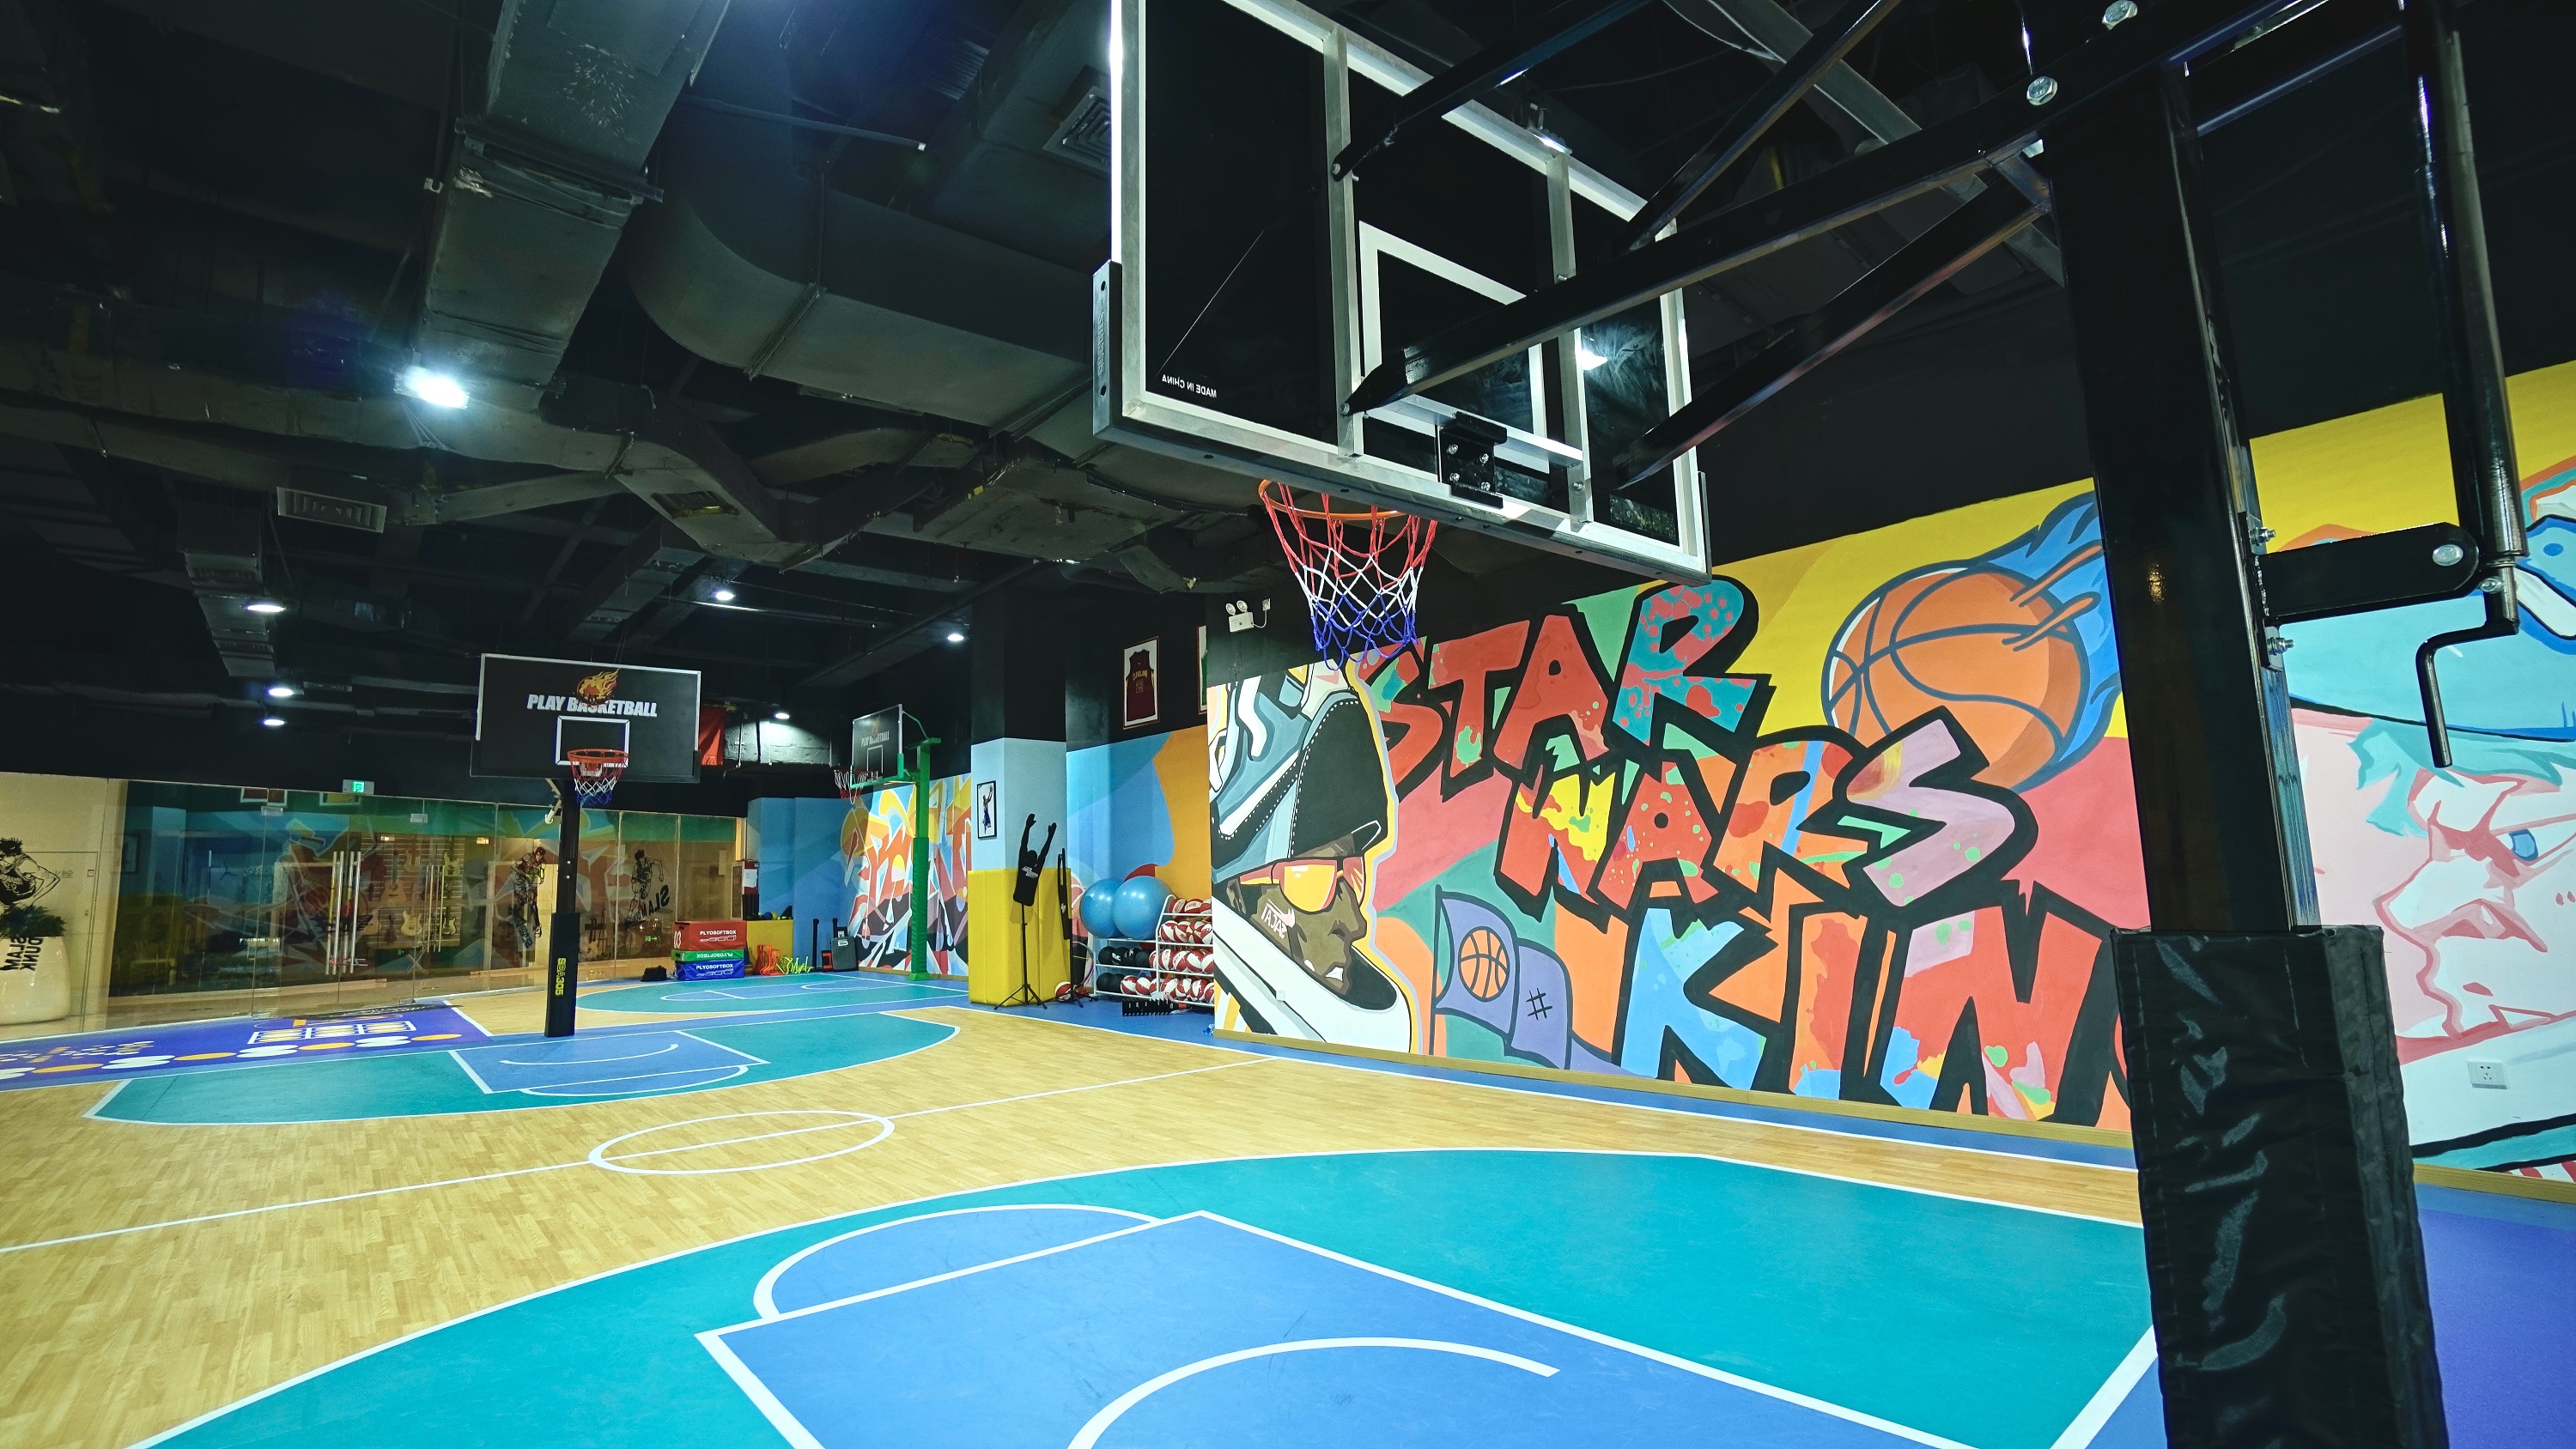 【空间设计】苏州星战王篮球俱乐部场馆设计